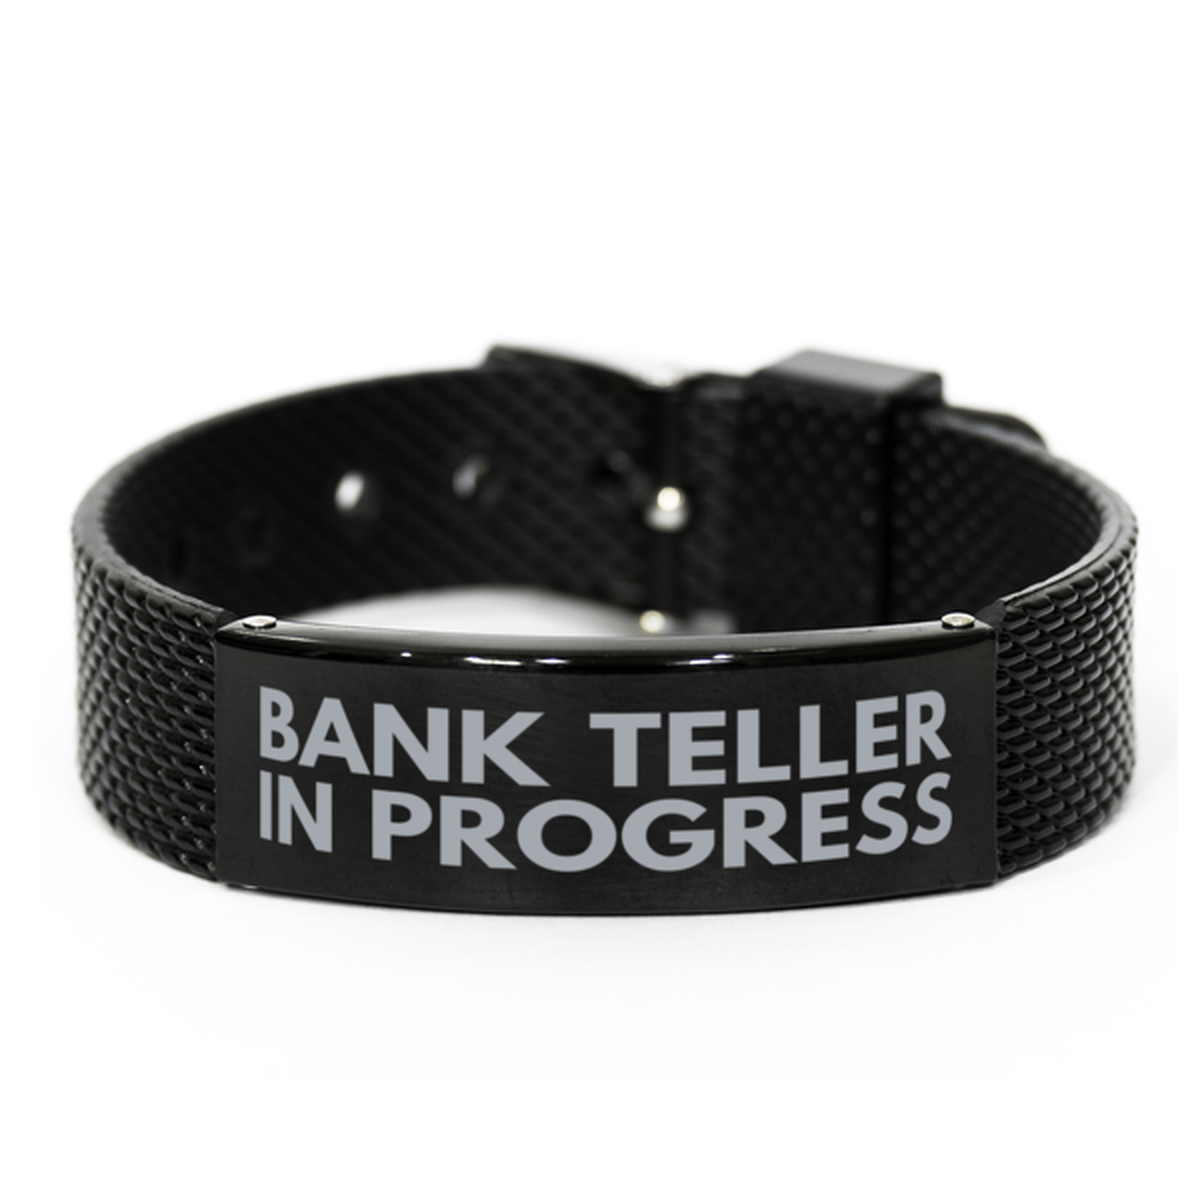 Inspirational Bank Teller Black Shark Mesh Bracelet, Bank Teller In Progress, Best Graduation Gifts for Students